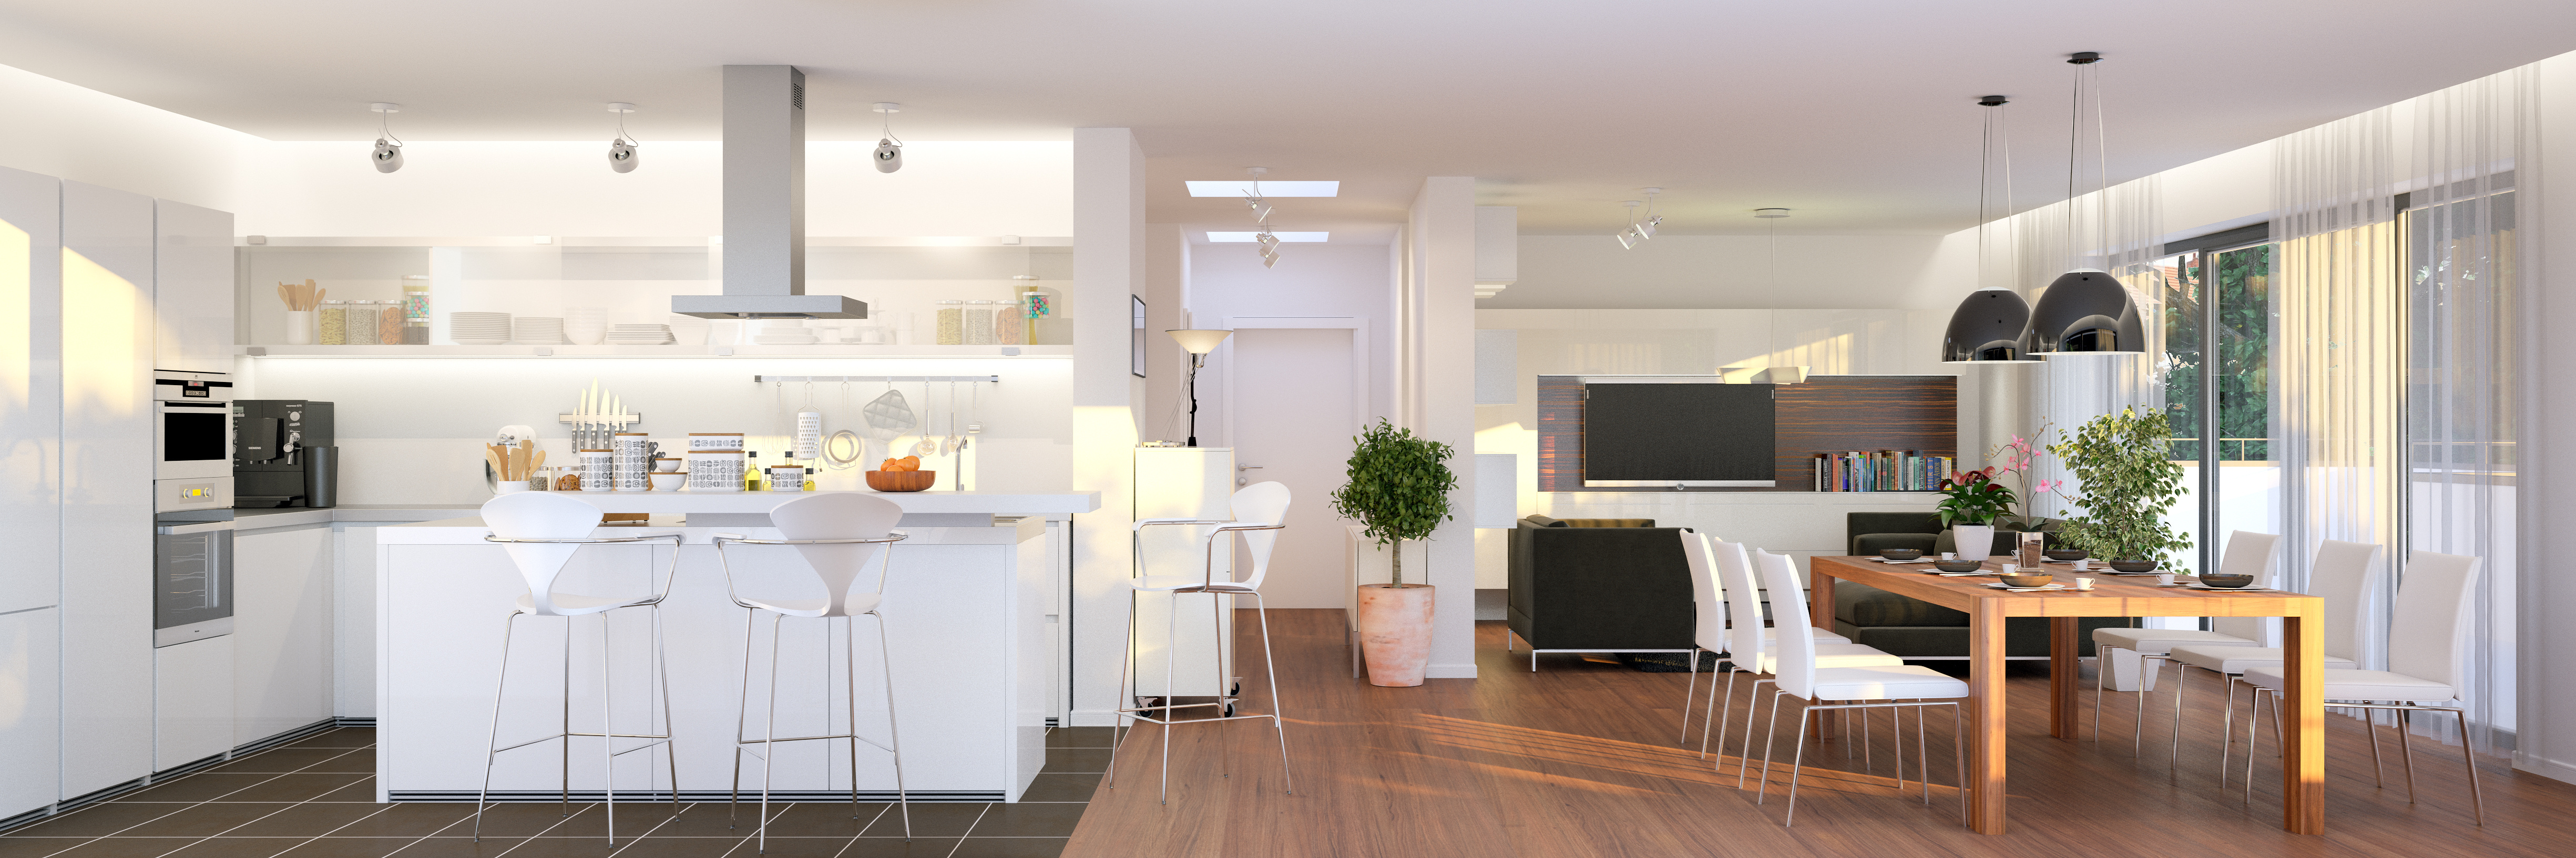 Offene Küche und Wohnzimmerbereich - ©AdobeStock_89910337_Christian Hillebrand